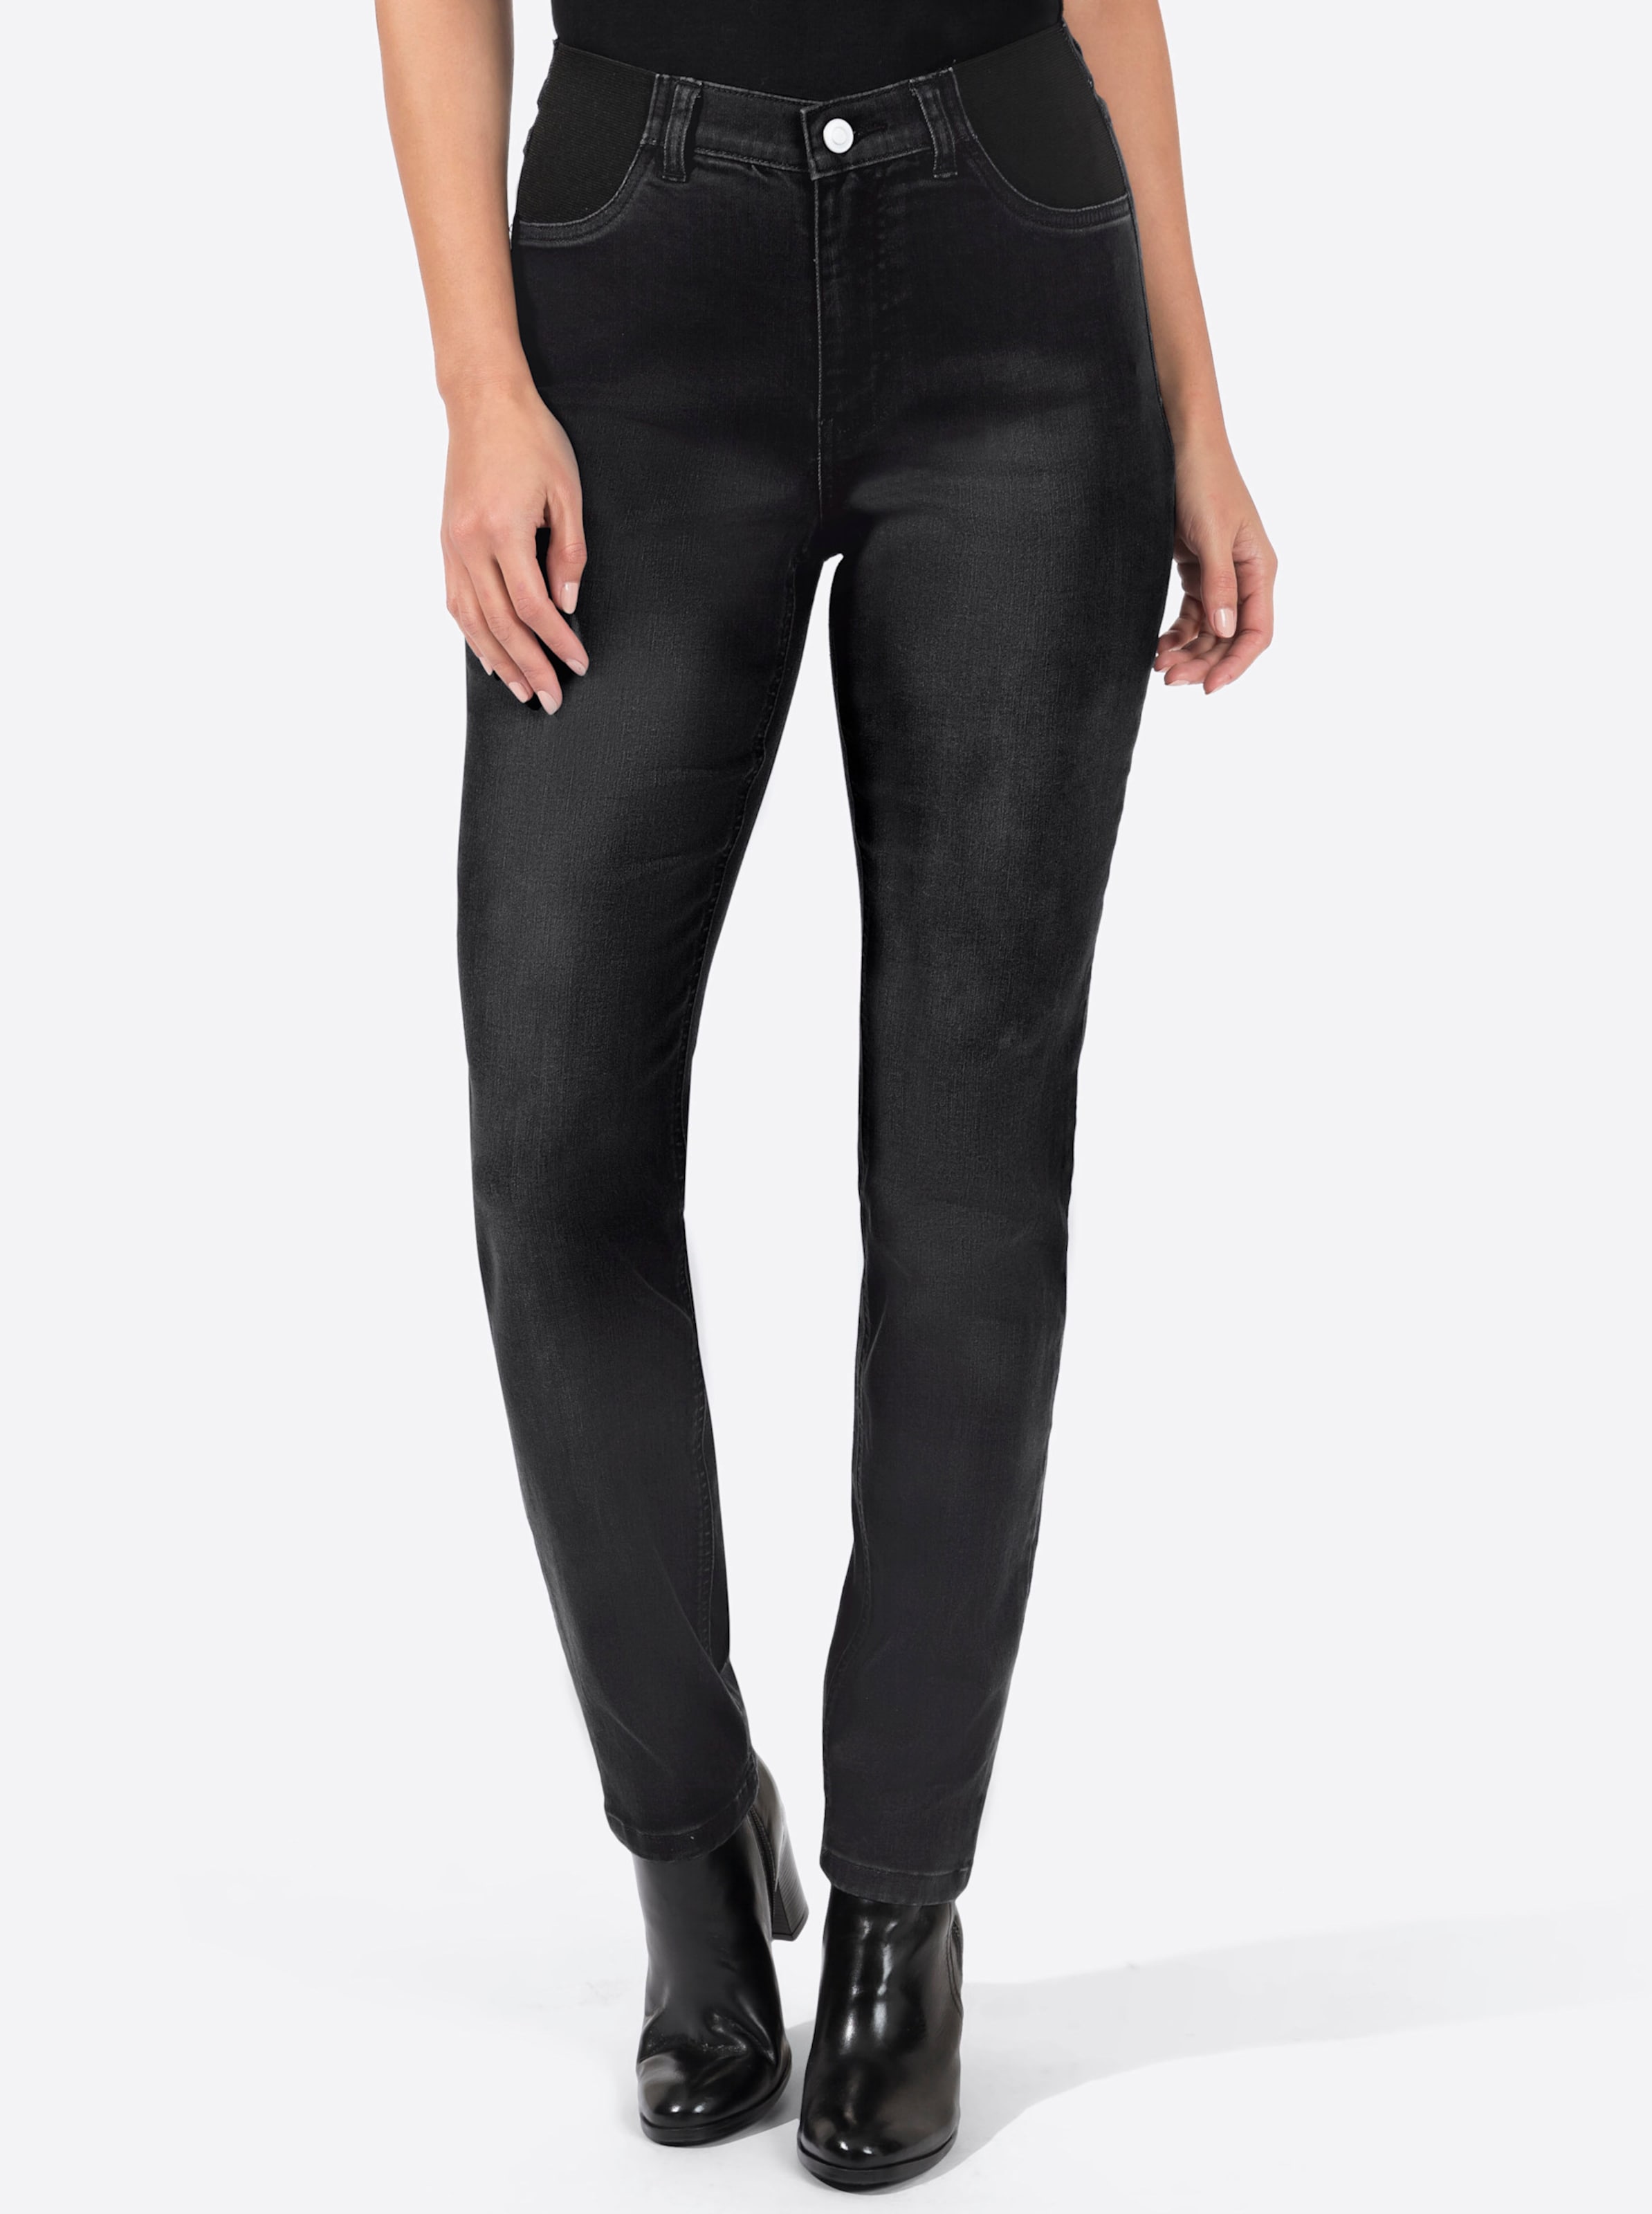 Witt Damen Jeans, black-denim